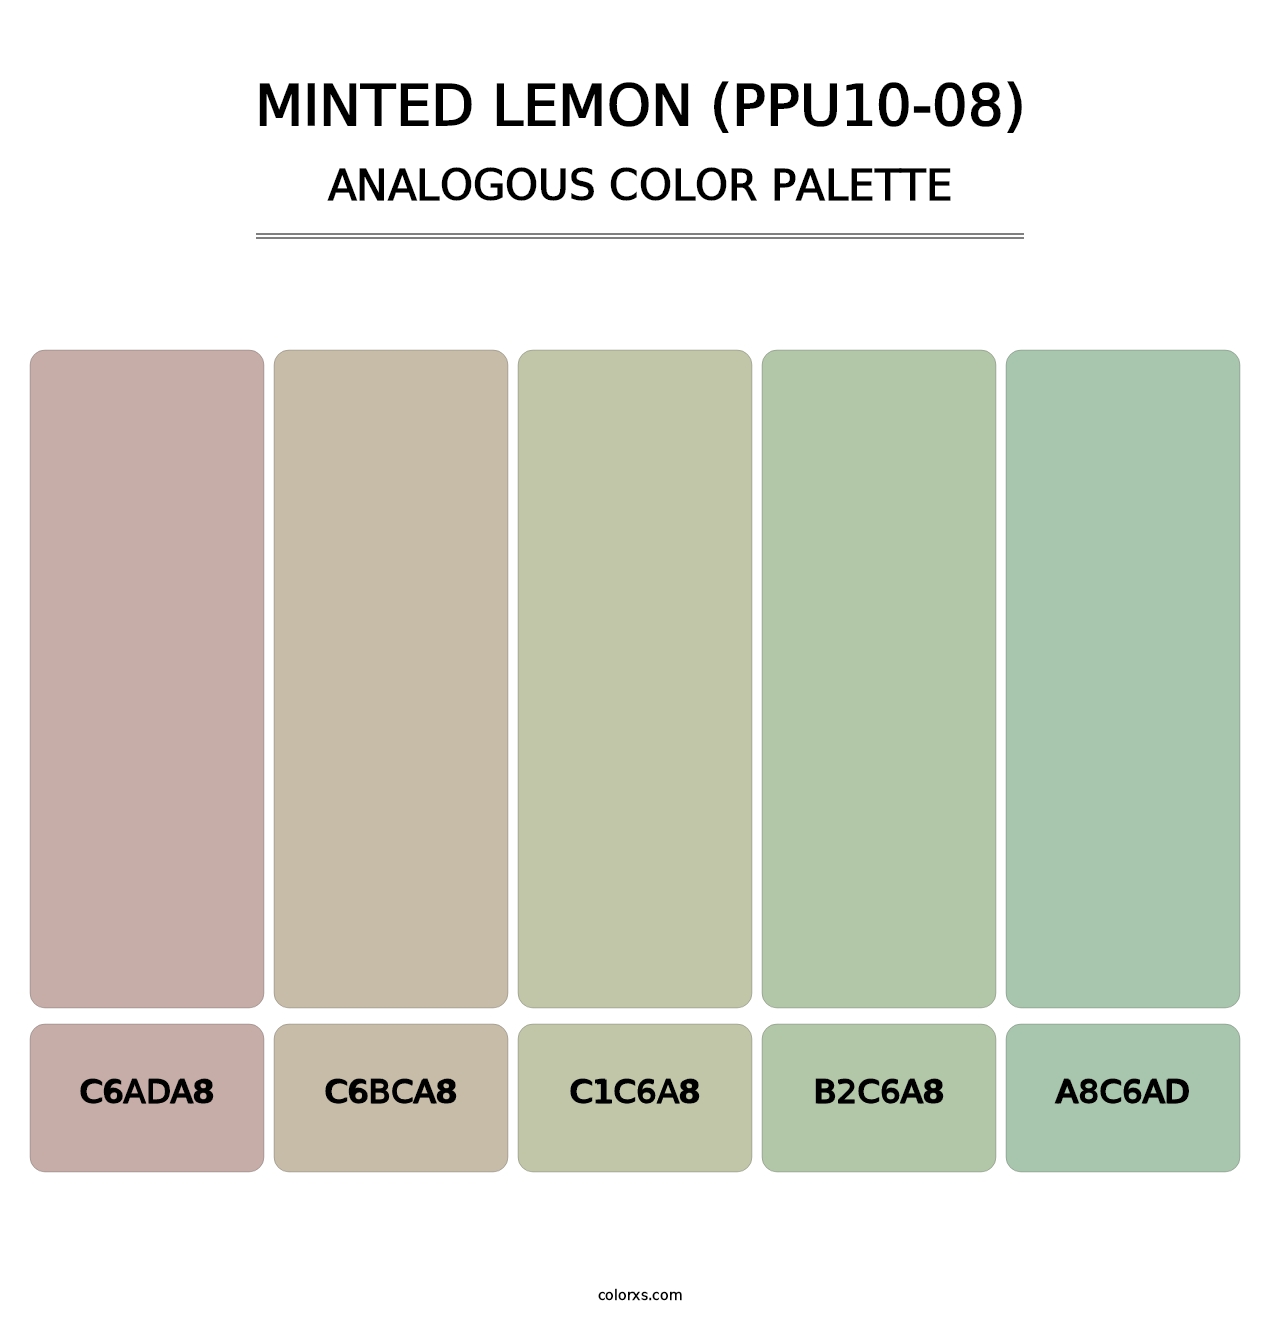 Minted Lemon (PPU10-08) - Analogous Color Palette